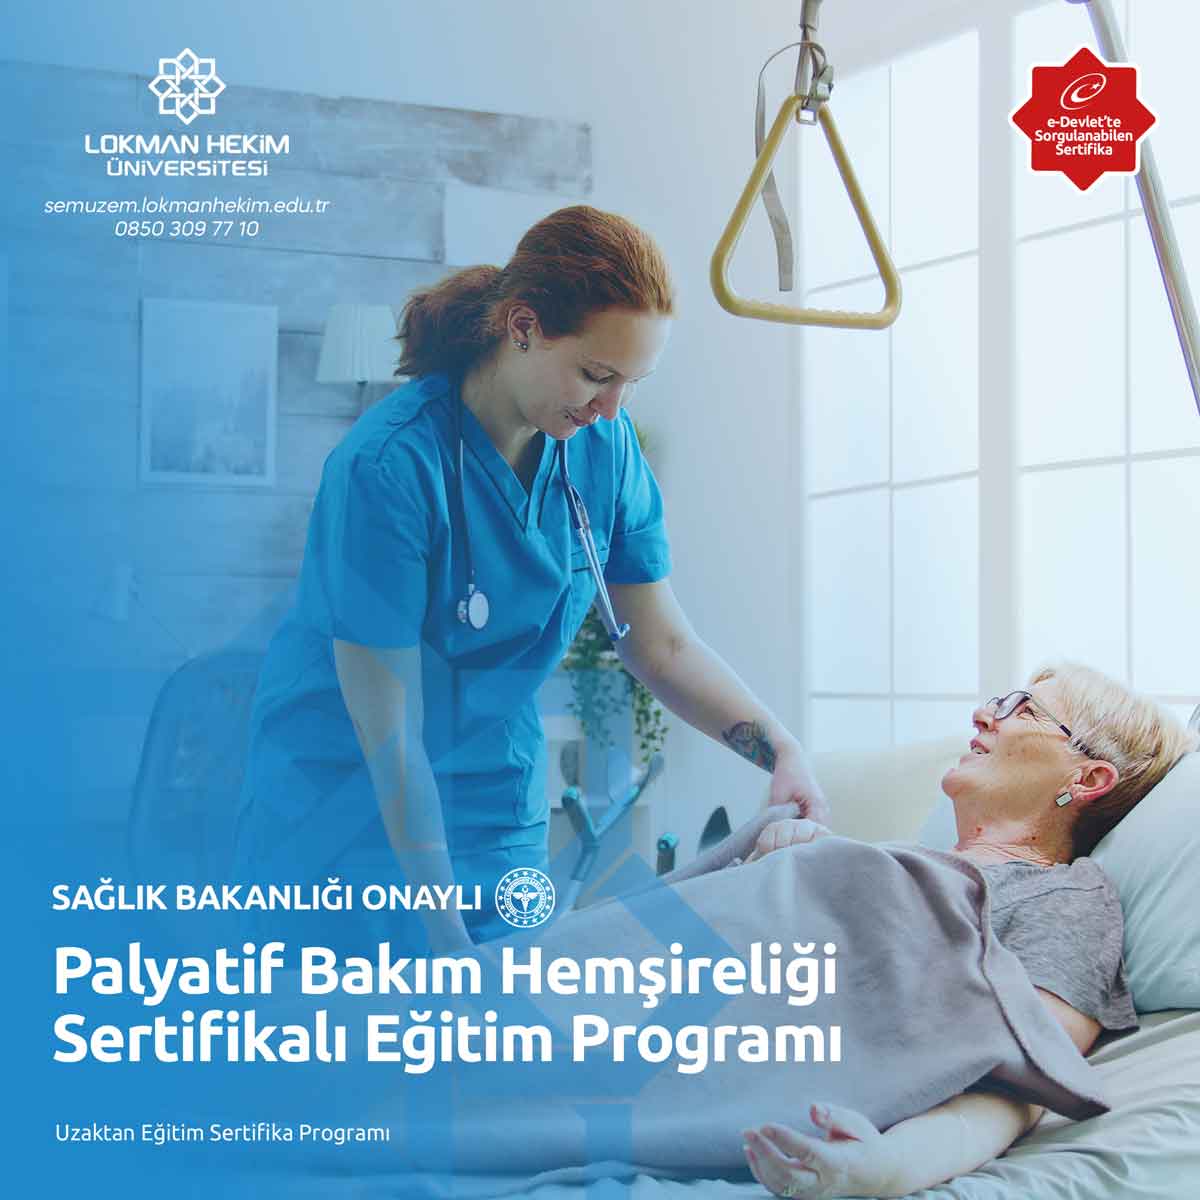 Palyatif Bakım Hemşireliği Sertifikalı Eğitim Programı